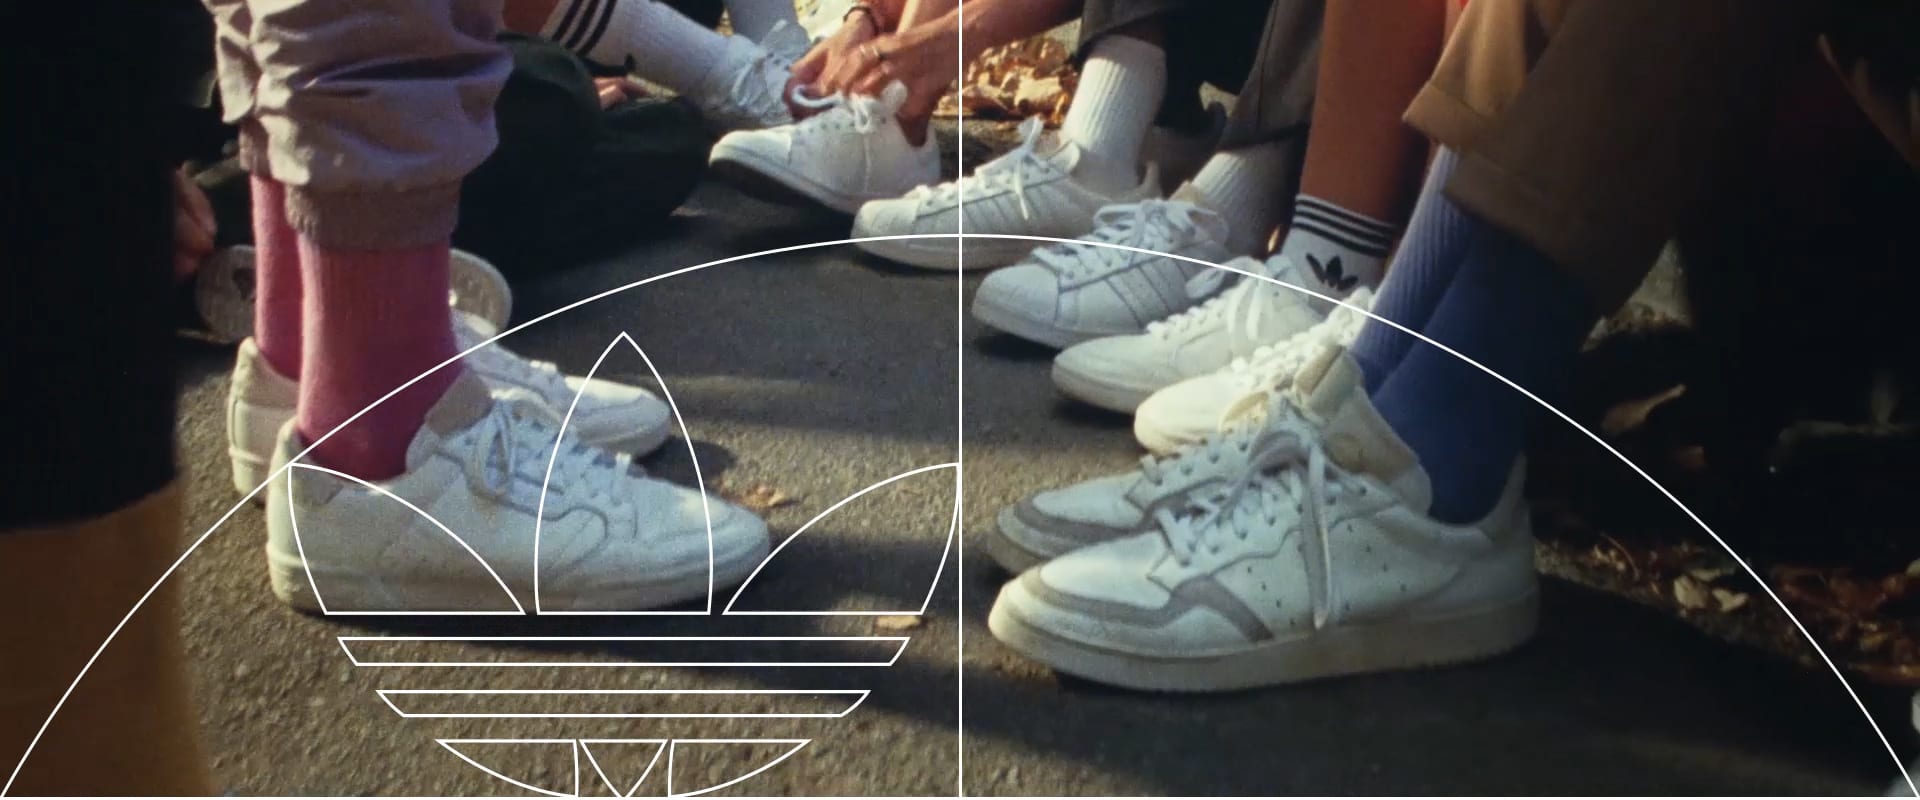 adidas originals home of classics supercourt trainer in white